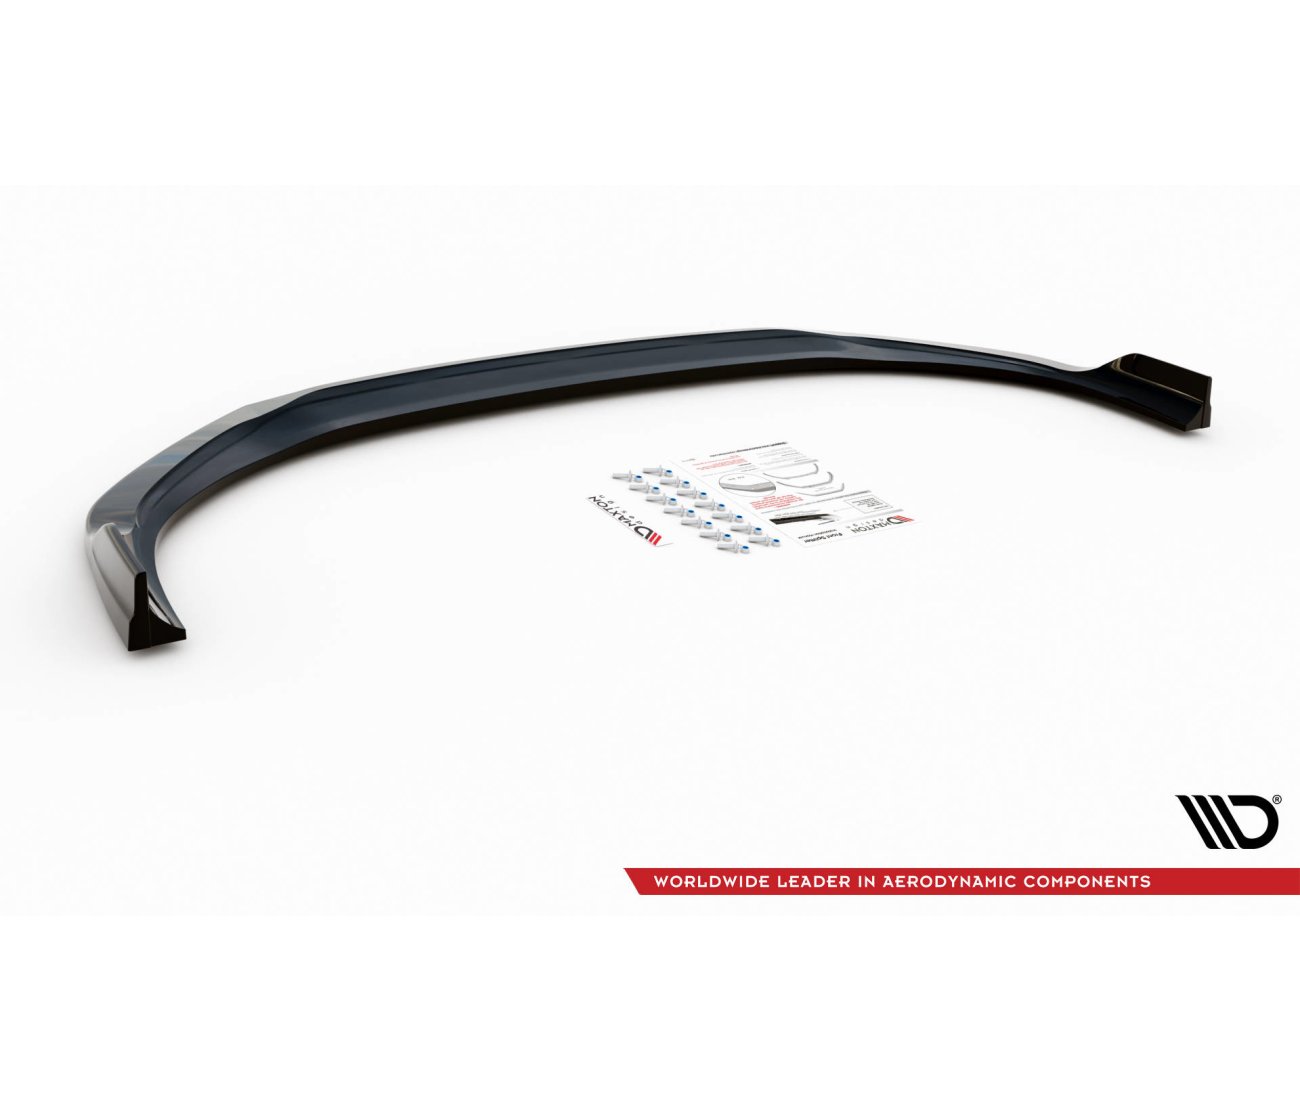 Front Lippe / Front Splitter / Frontansatz V.1 für Hyundai i30 PDE